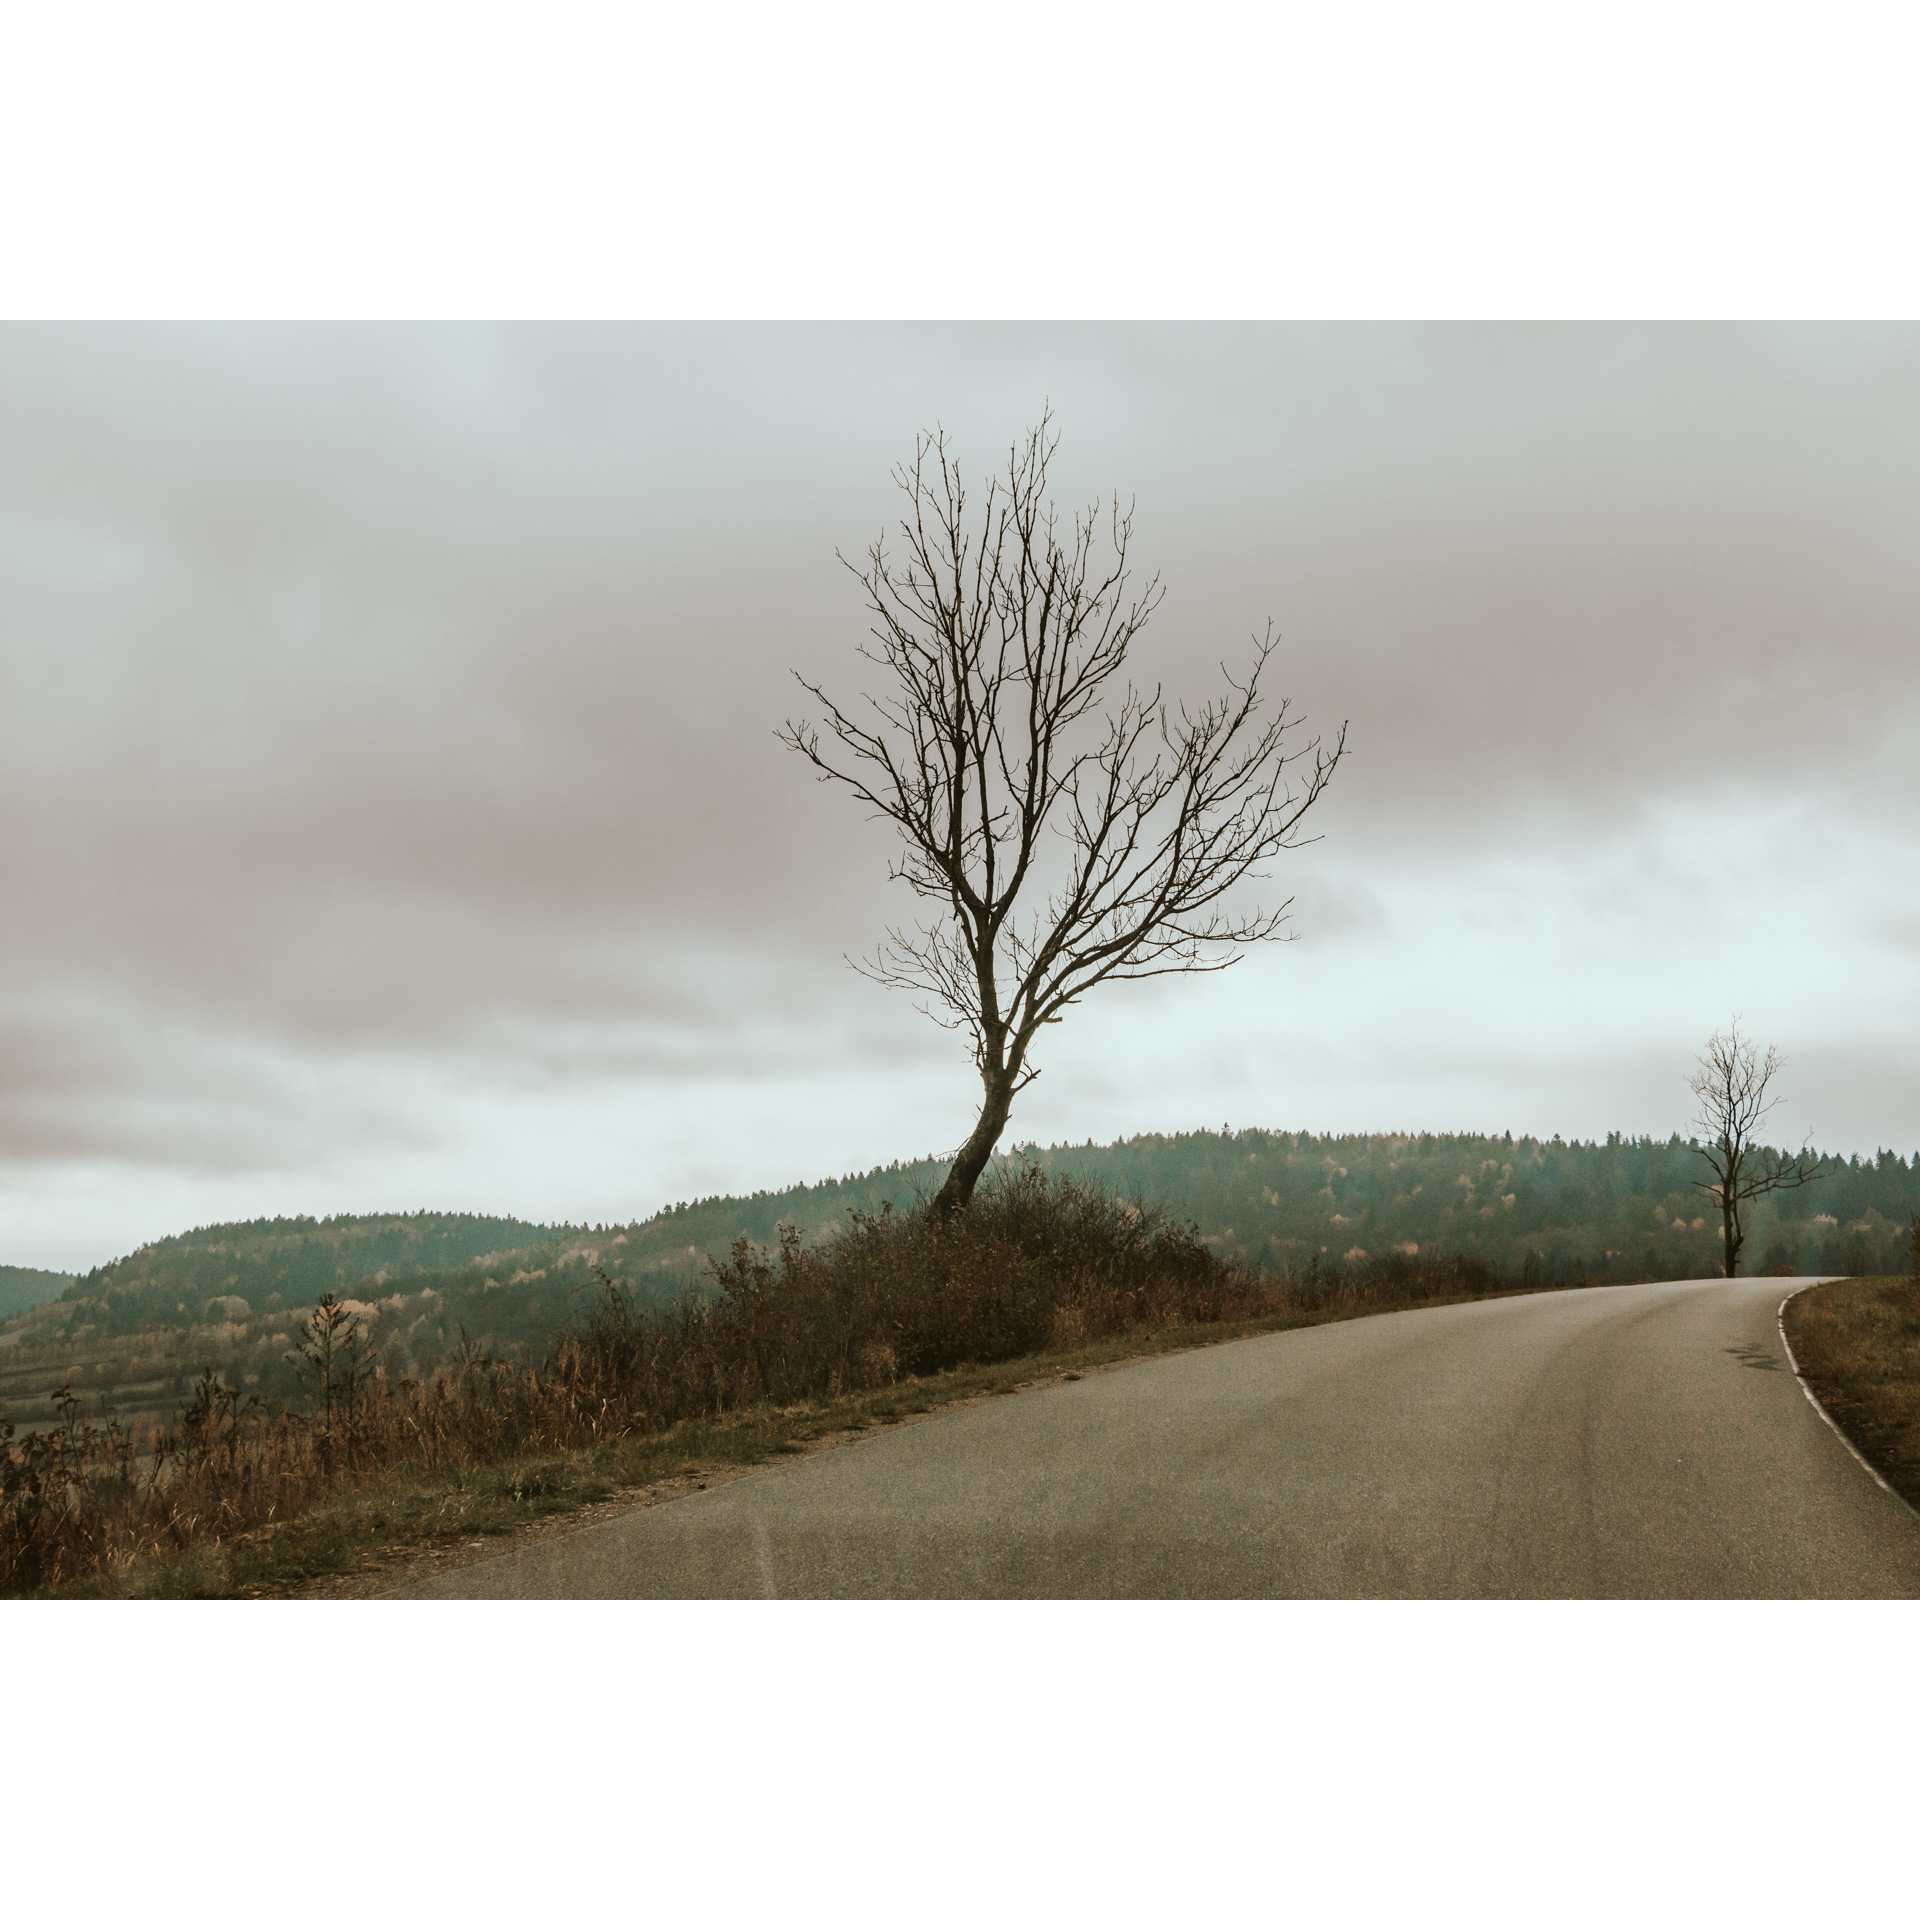 Na środku drzewo bez liści rosnące przy asfaltowej drodze skręcającej w prawo na tle szarego nieba